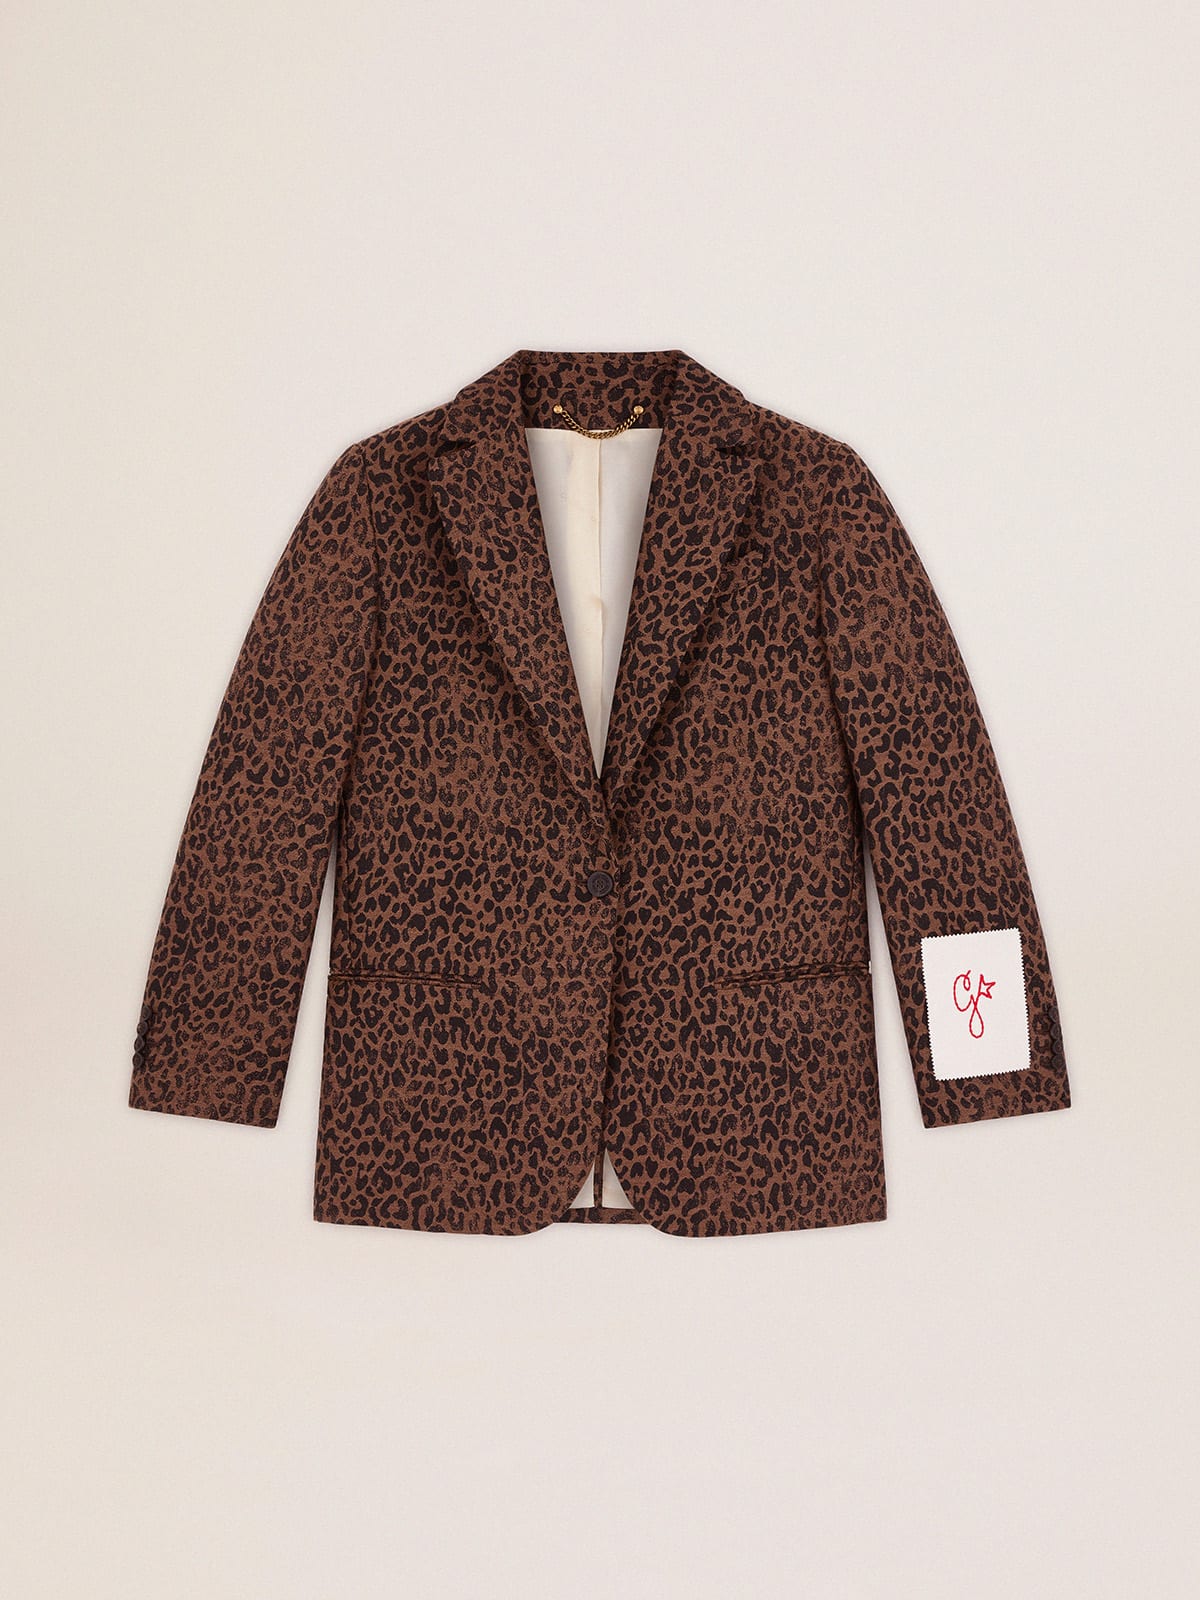 Golden Goose - Women's single-breasted leopard print blazer in 